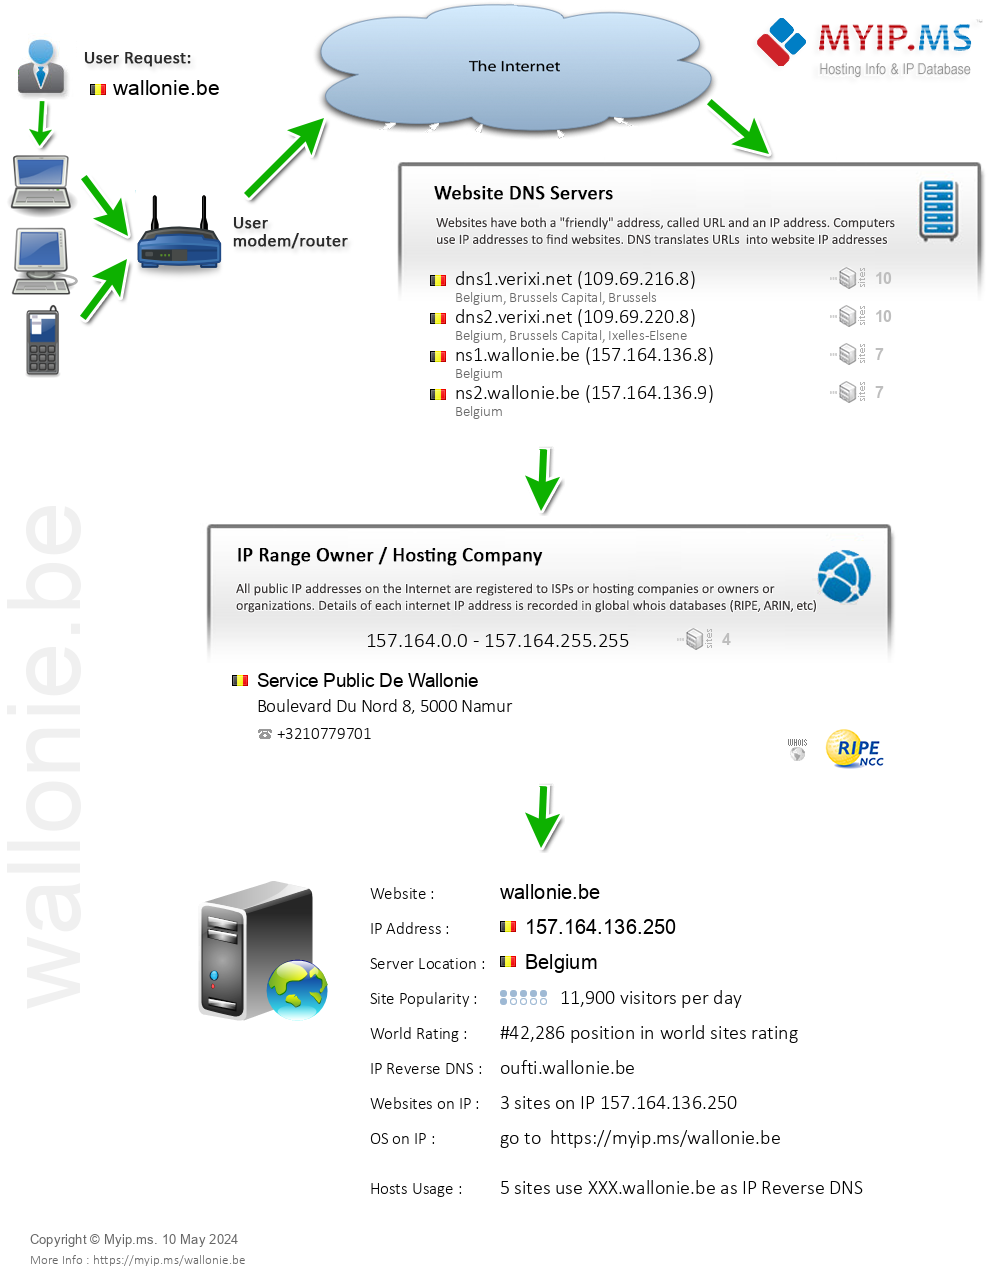 Wallonie.be - Website Hosting Visual IP Diagram